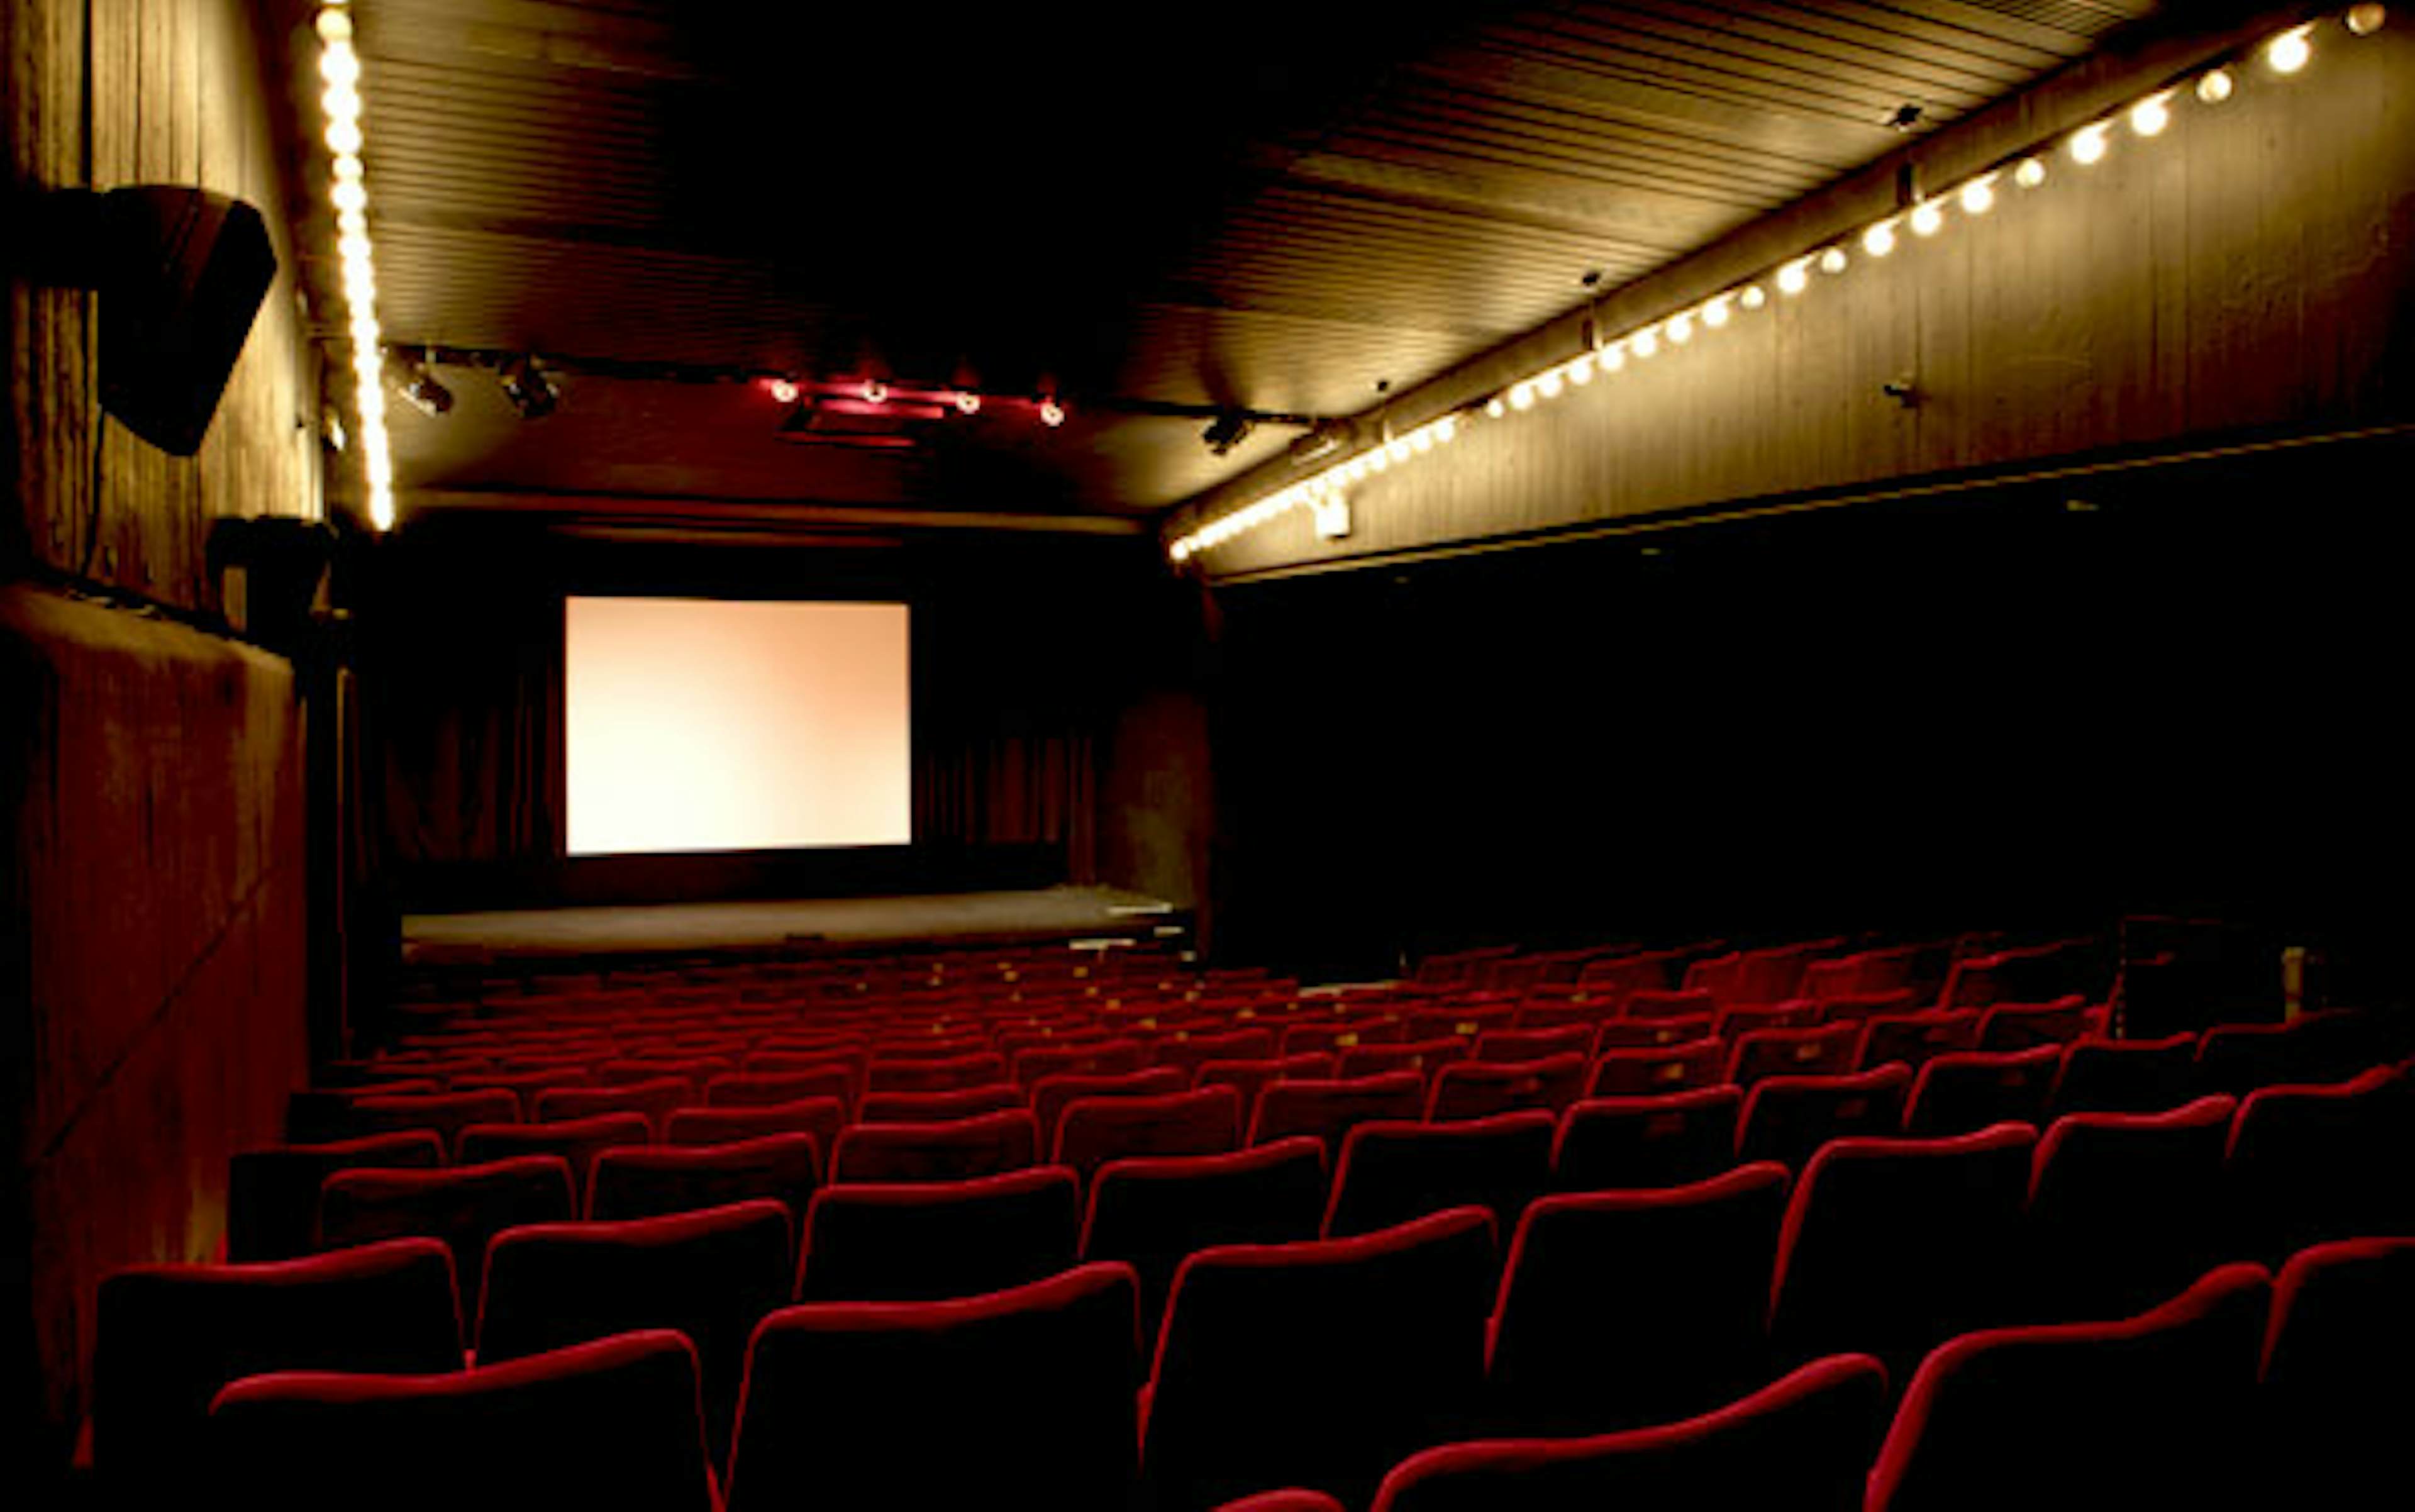 Institute of Contemporary Arts (ICA) - Cinema 1 image 1